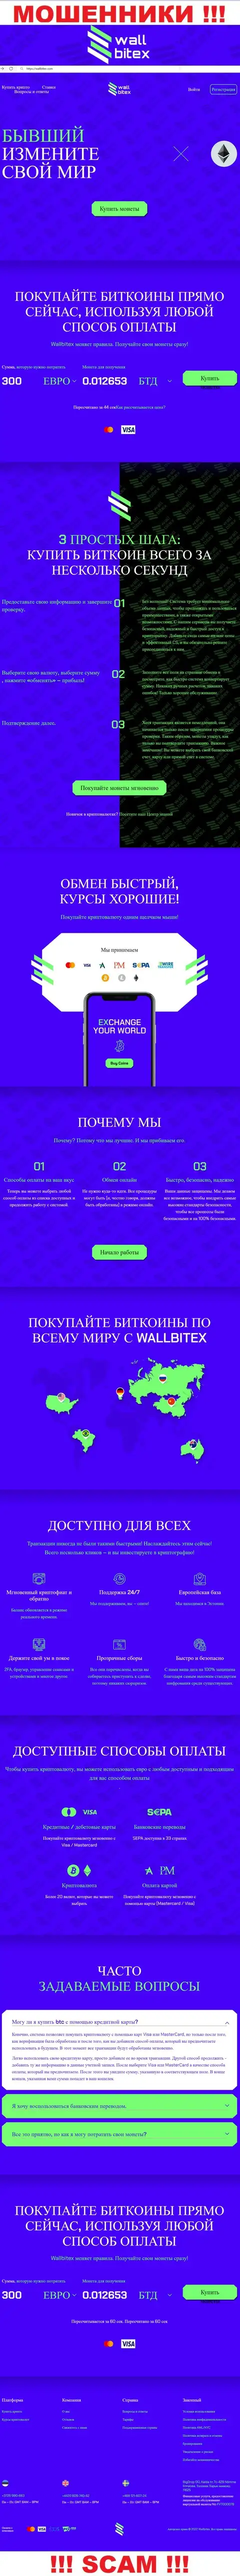 WallBitex Com - это официальный сервис жульнической компании WallBitex